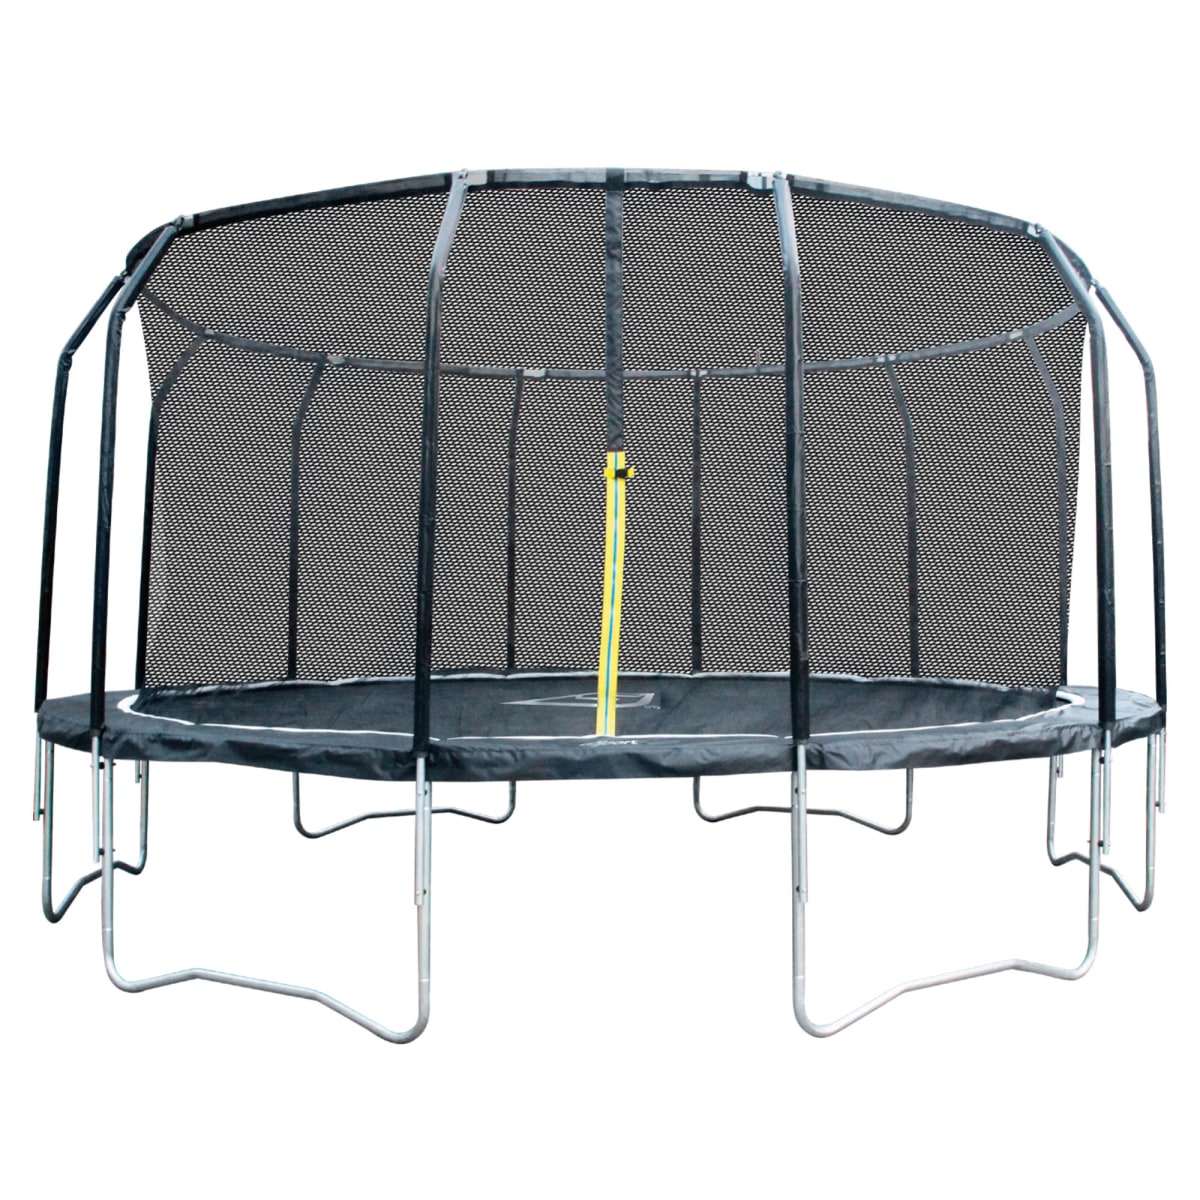 iSport Air 5 m 120 jousta trampoliini turvaverkolla   verkkokauppa